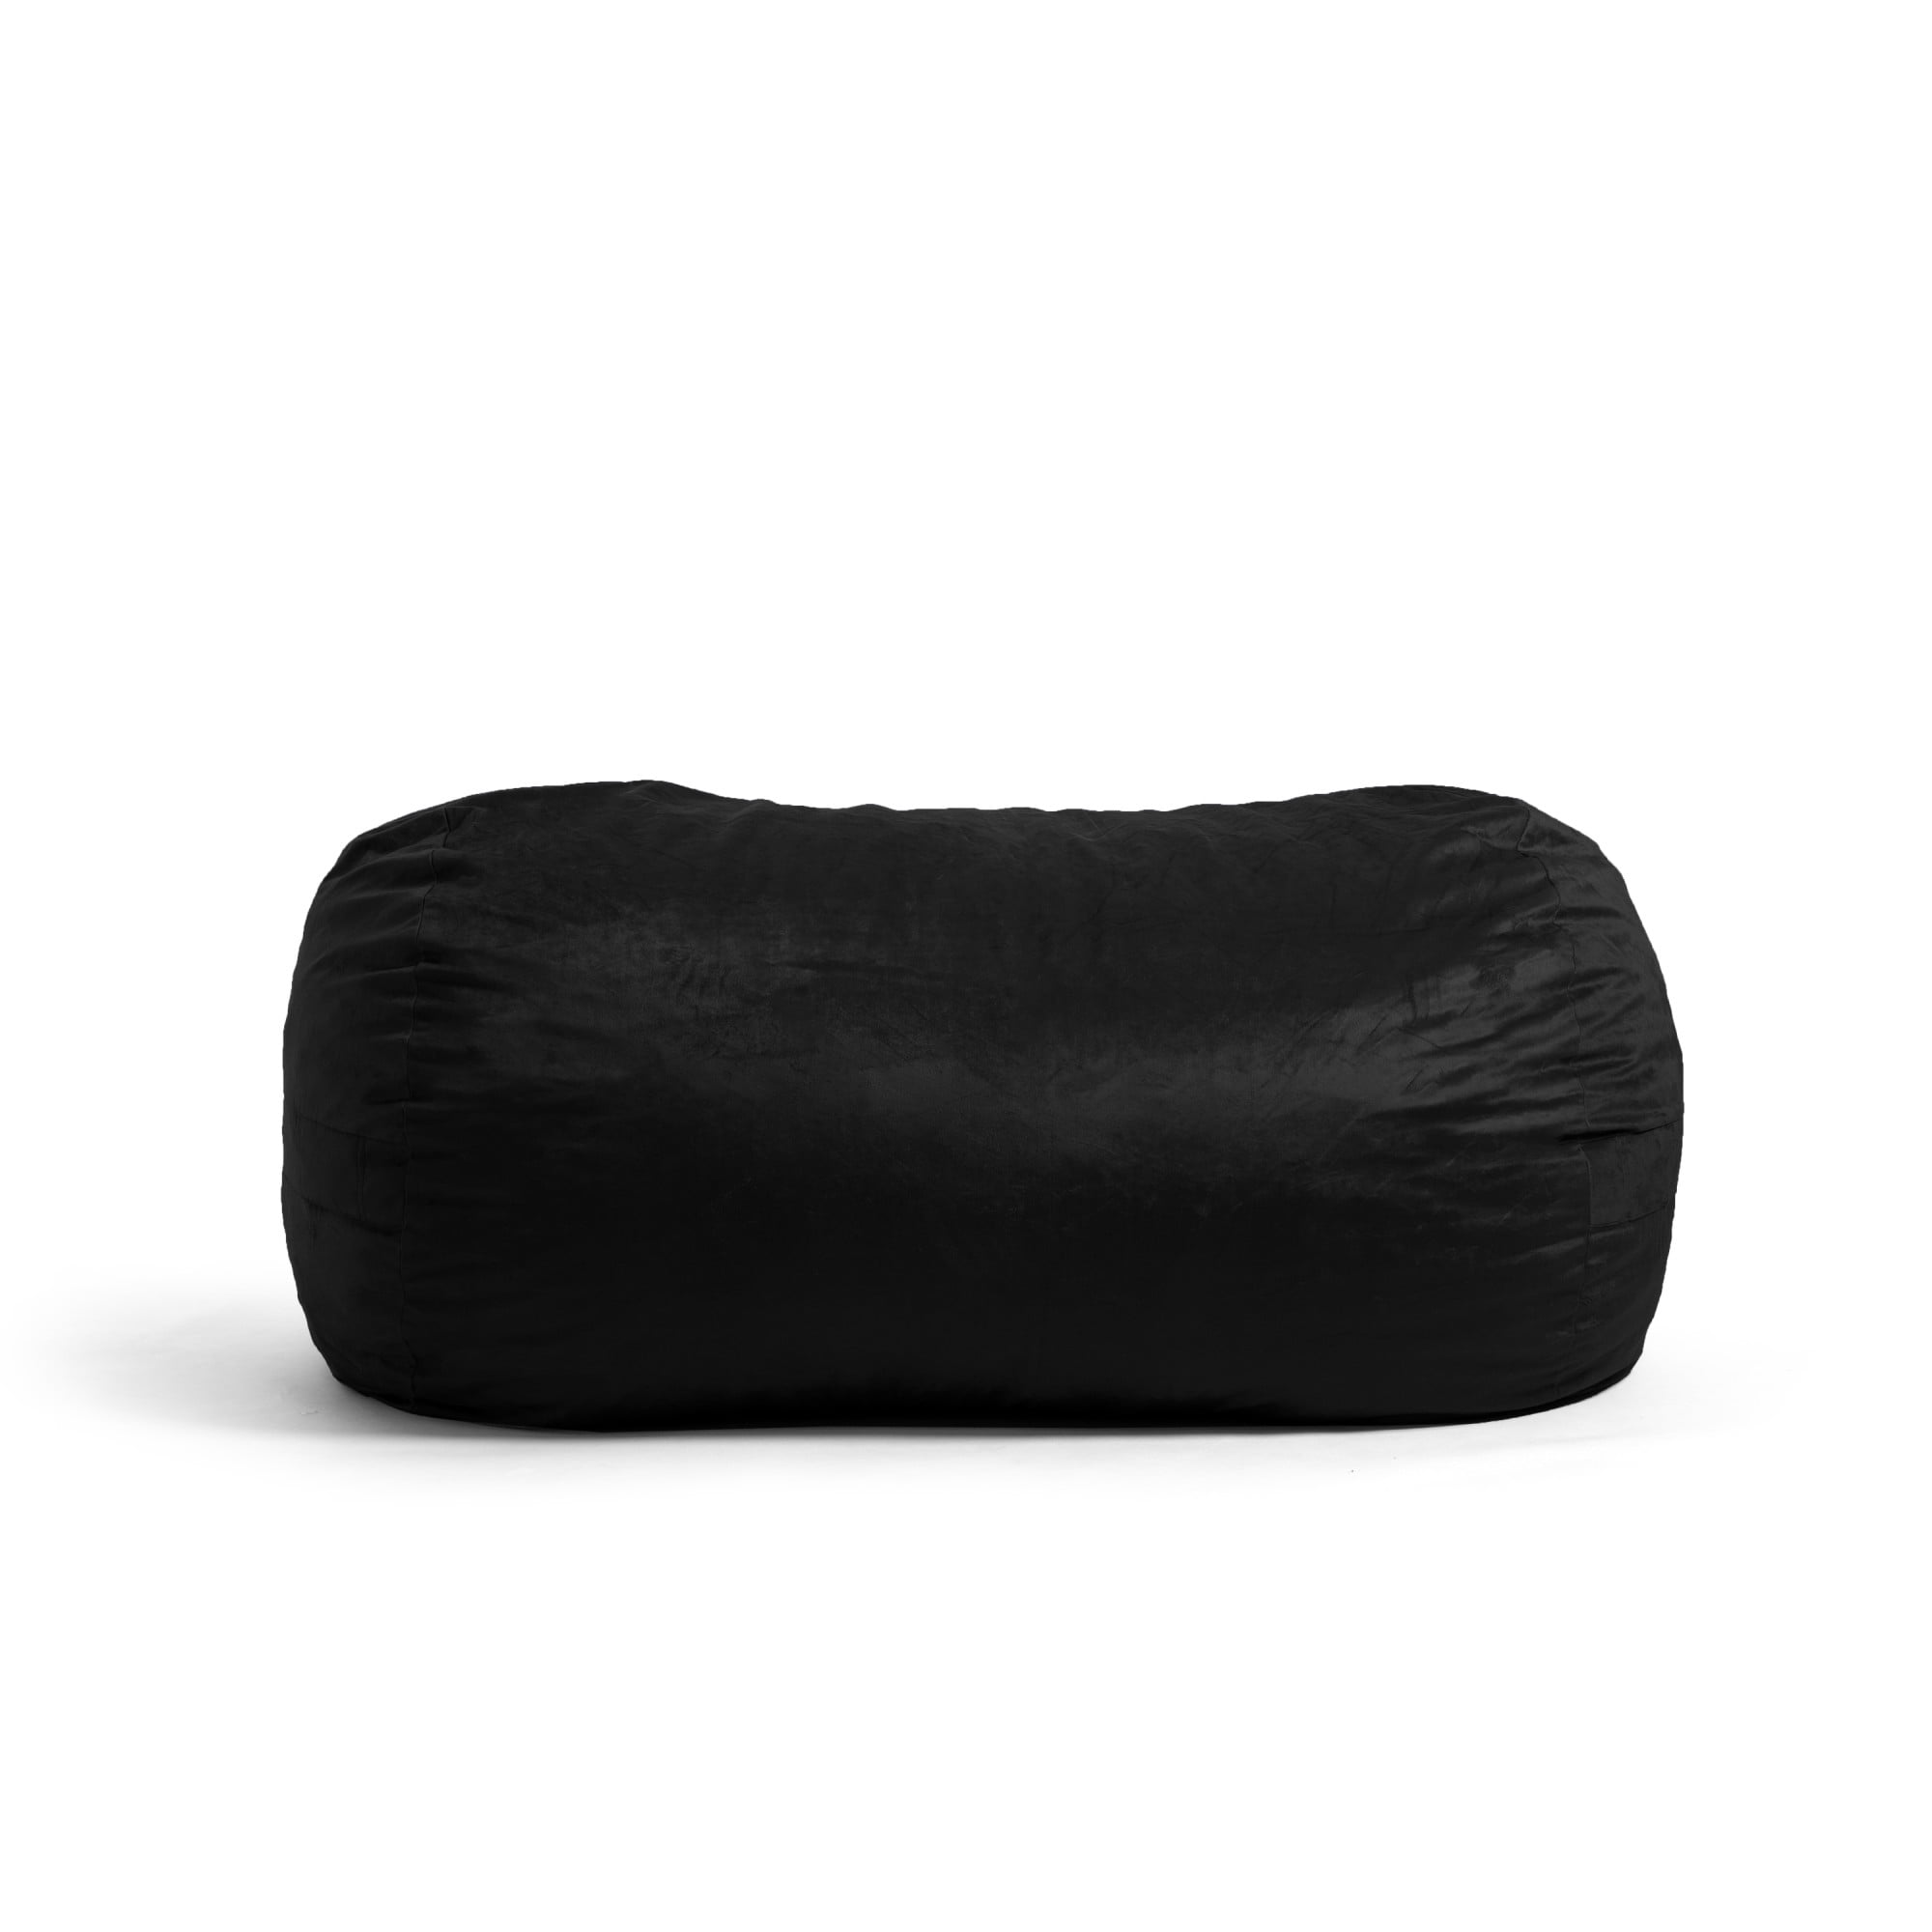 Big Joe Milano Bean Bag Chair, Black Smartmax, 2.5ft & Bean Refill 2Pk  Polystyrene Beans for Bean Bags or Crafts, 100 Liters per Bag